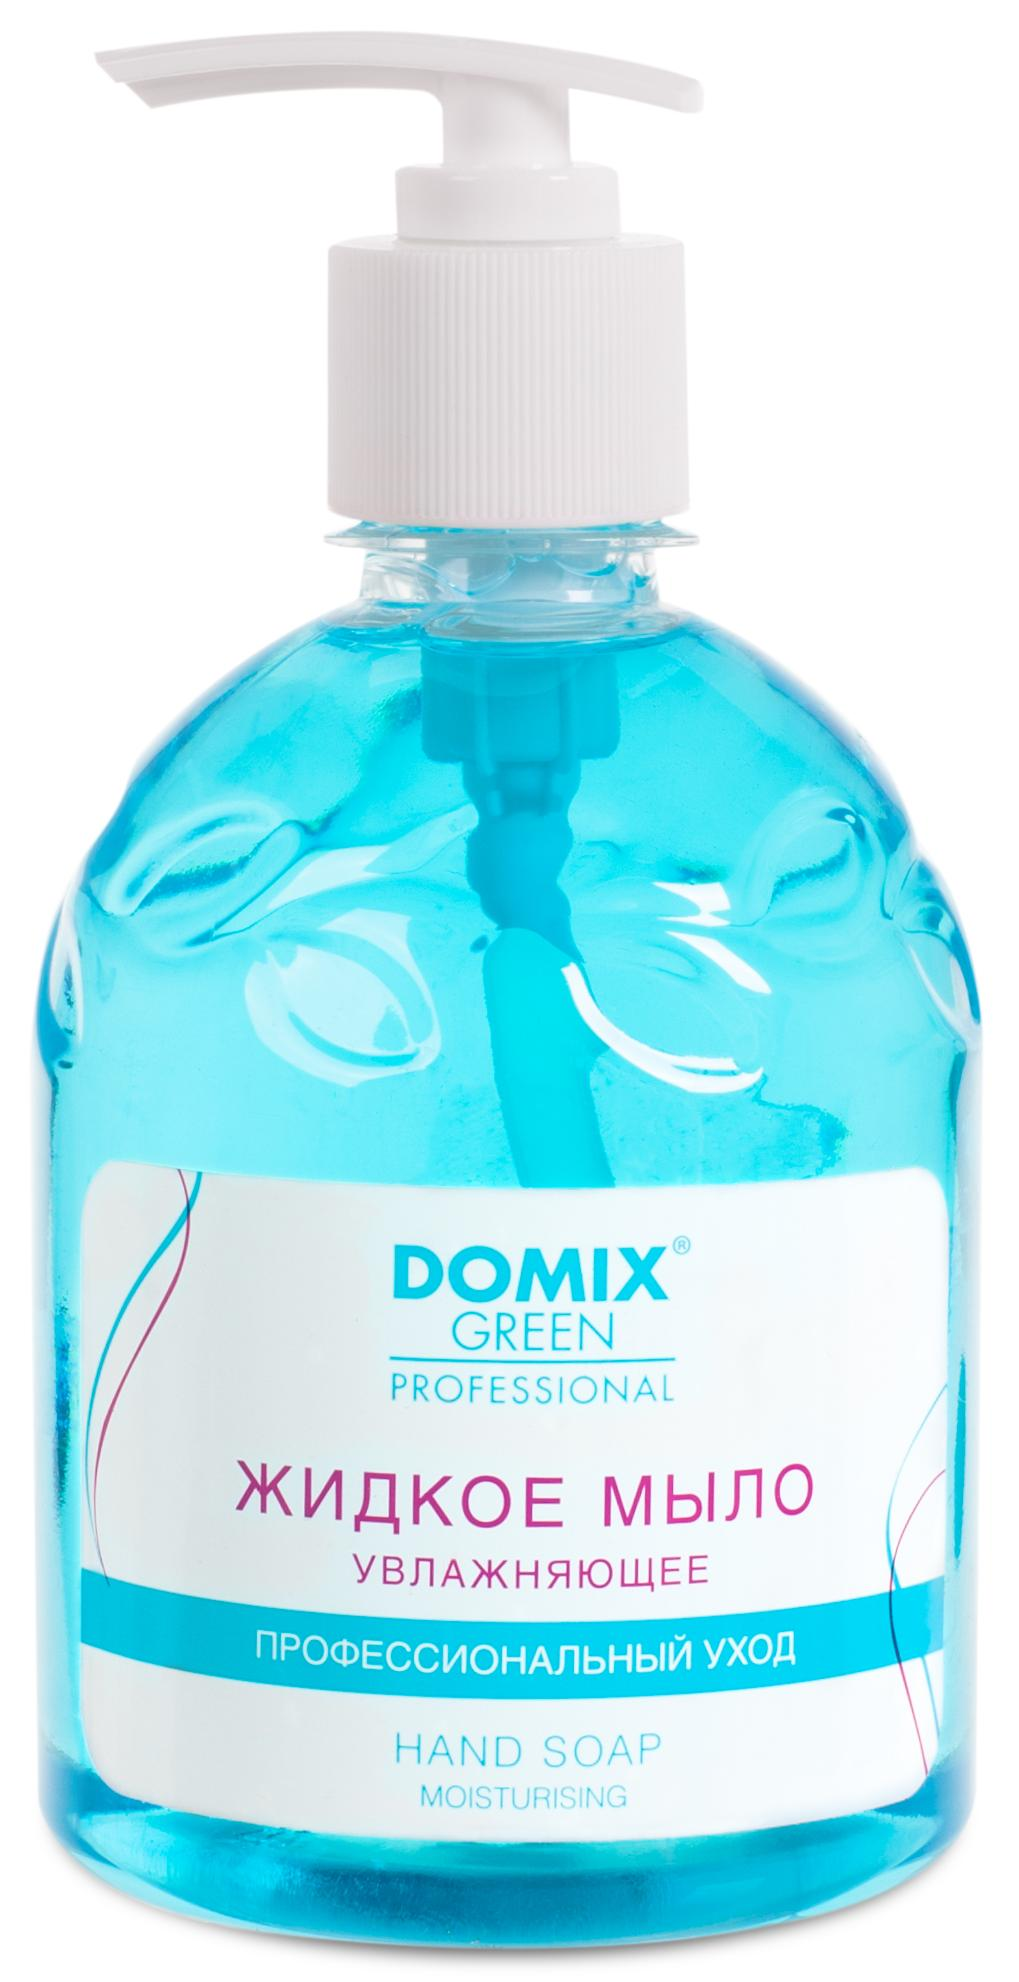 DOMIX Мыло жидкое увлажняющее для профессионального ухода / DGP 500 мл domix мыло жидкое смягчающее для профессионального ухода dgp 500 мл